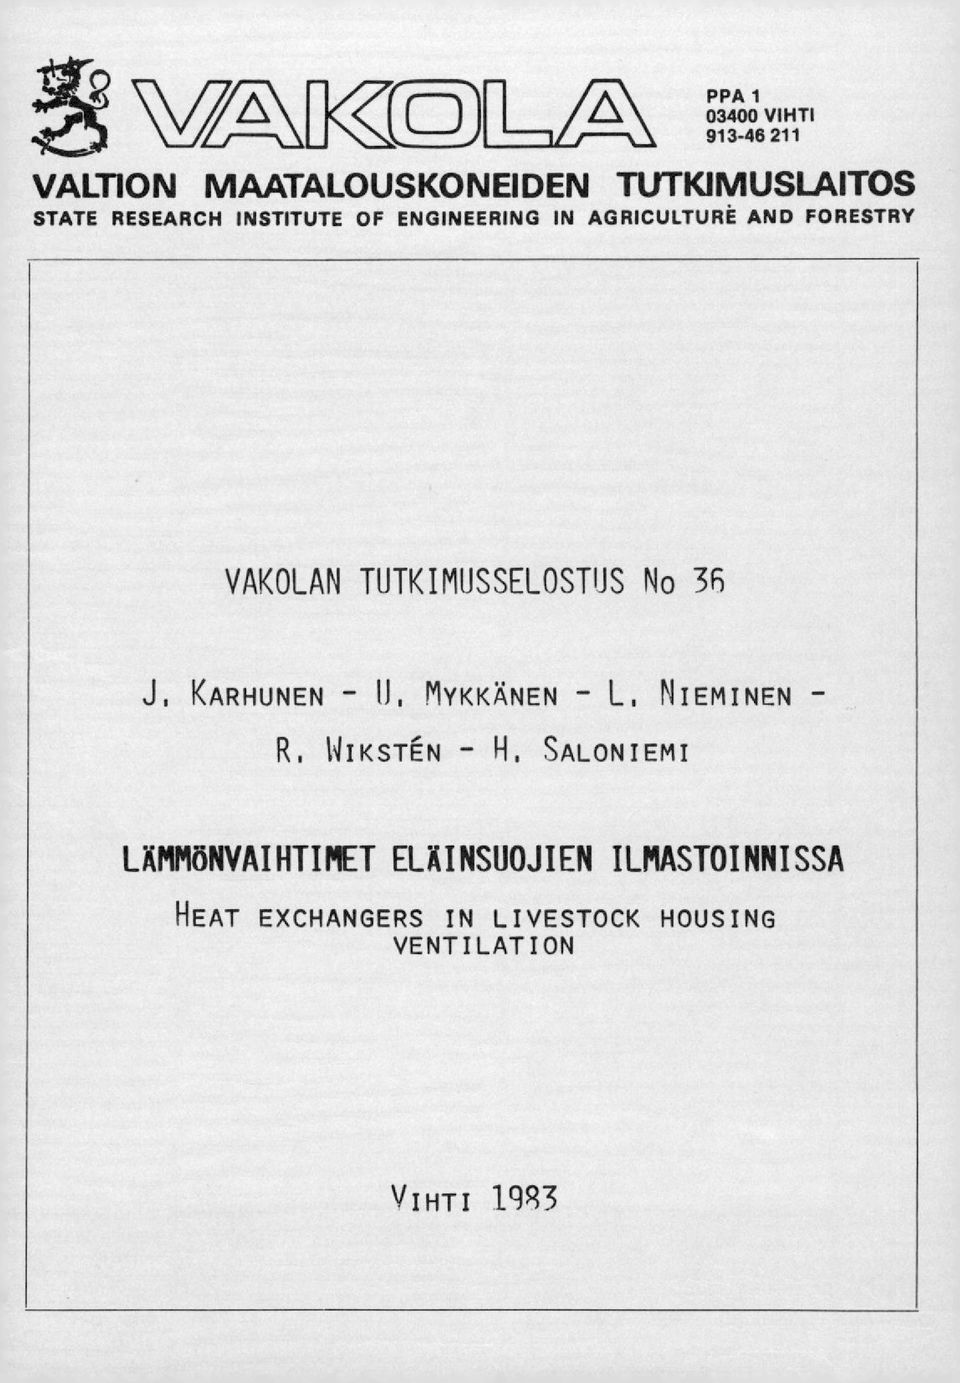 TUTKIMUSSELOSTUS No 3fS J. KARHUNEN N, MYKKÄNEN L. NIEMINEN R. WIKSTN H.